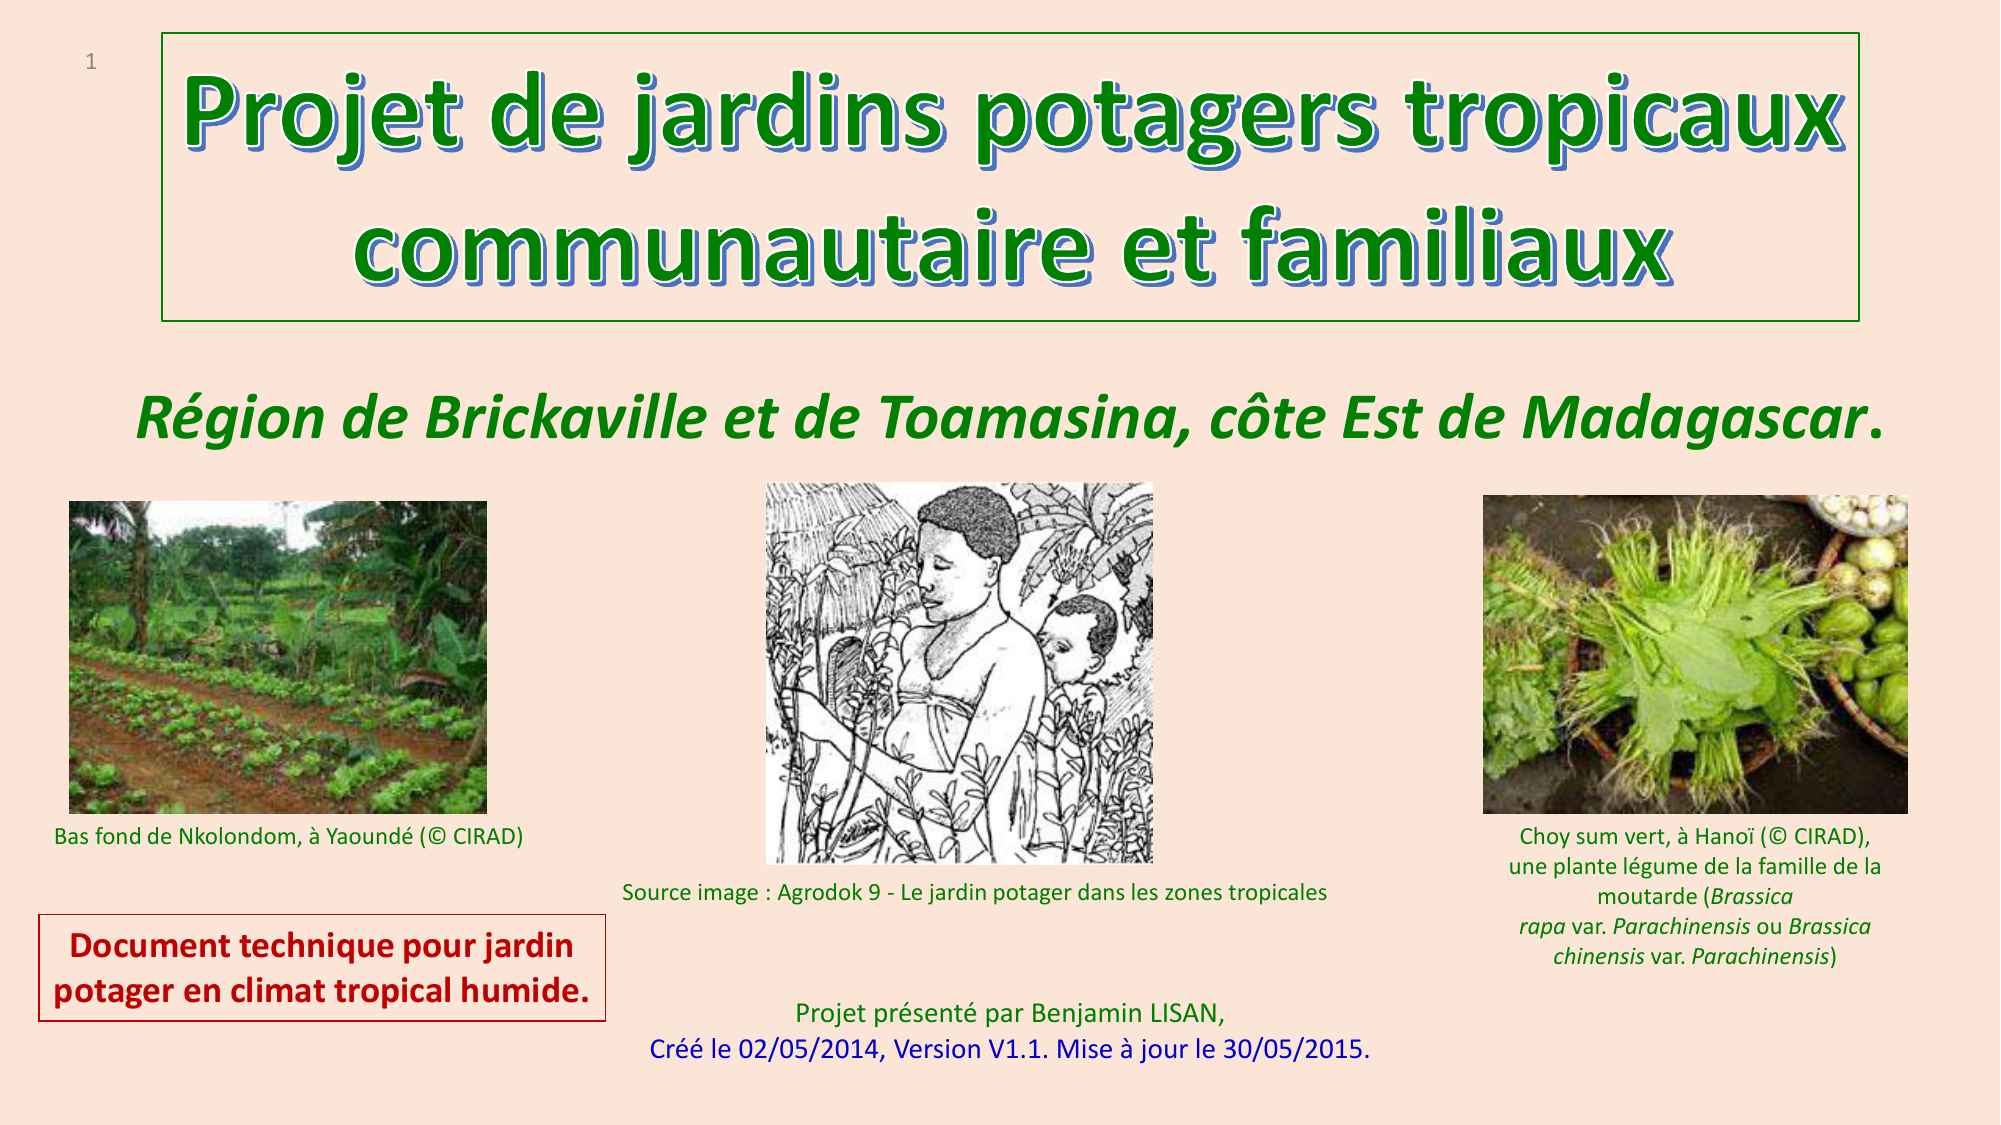 20 pcs/sac de haricots Graines bio délicieux Phaseolus vulgaris plante verte Semences-nutrition Graines de légumes non OGM 2